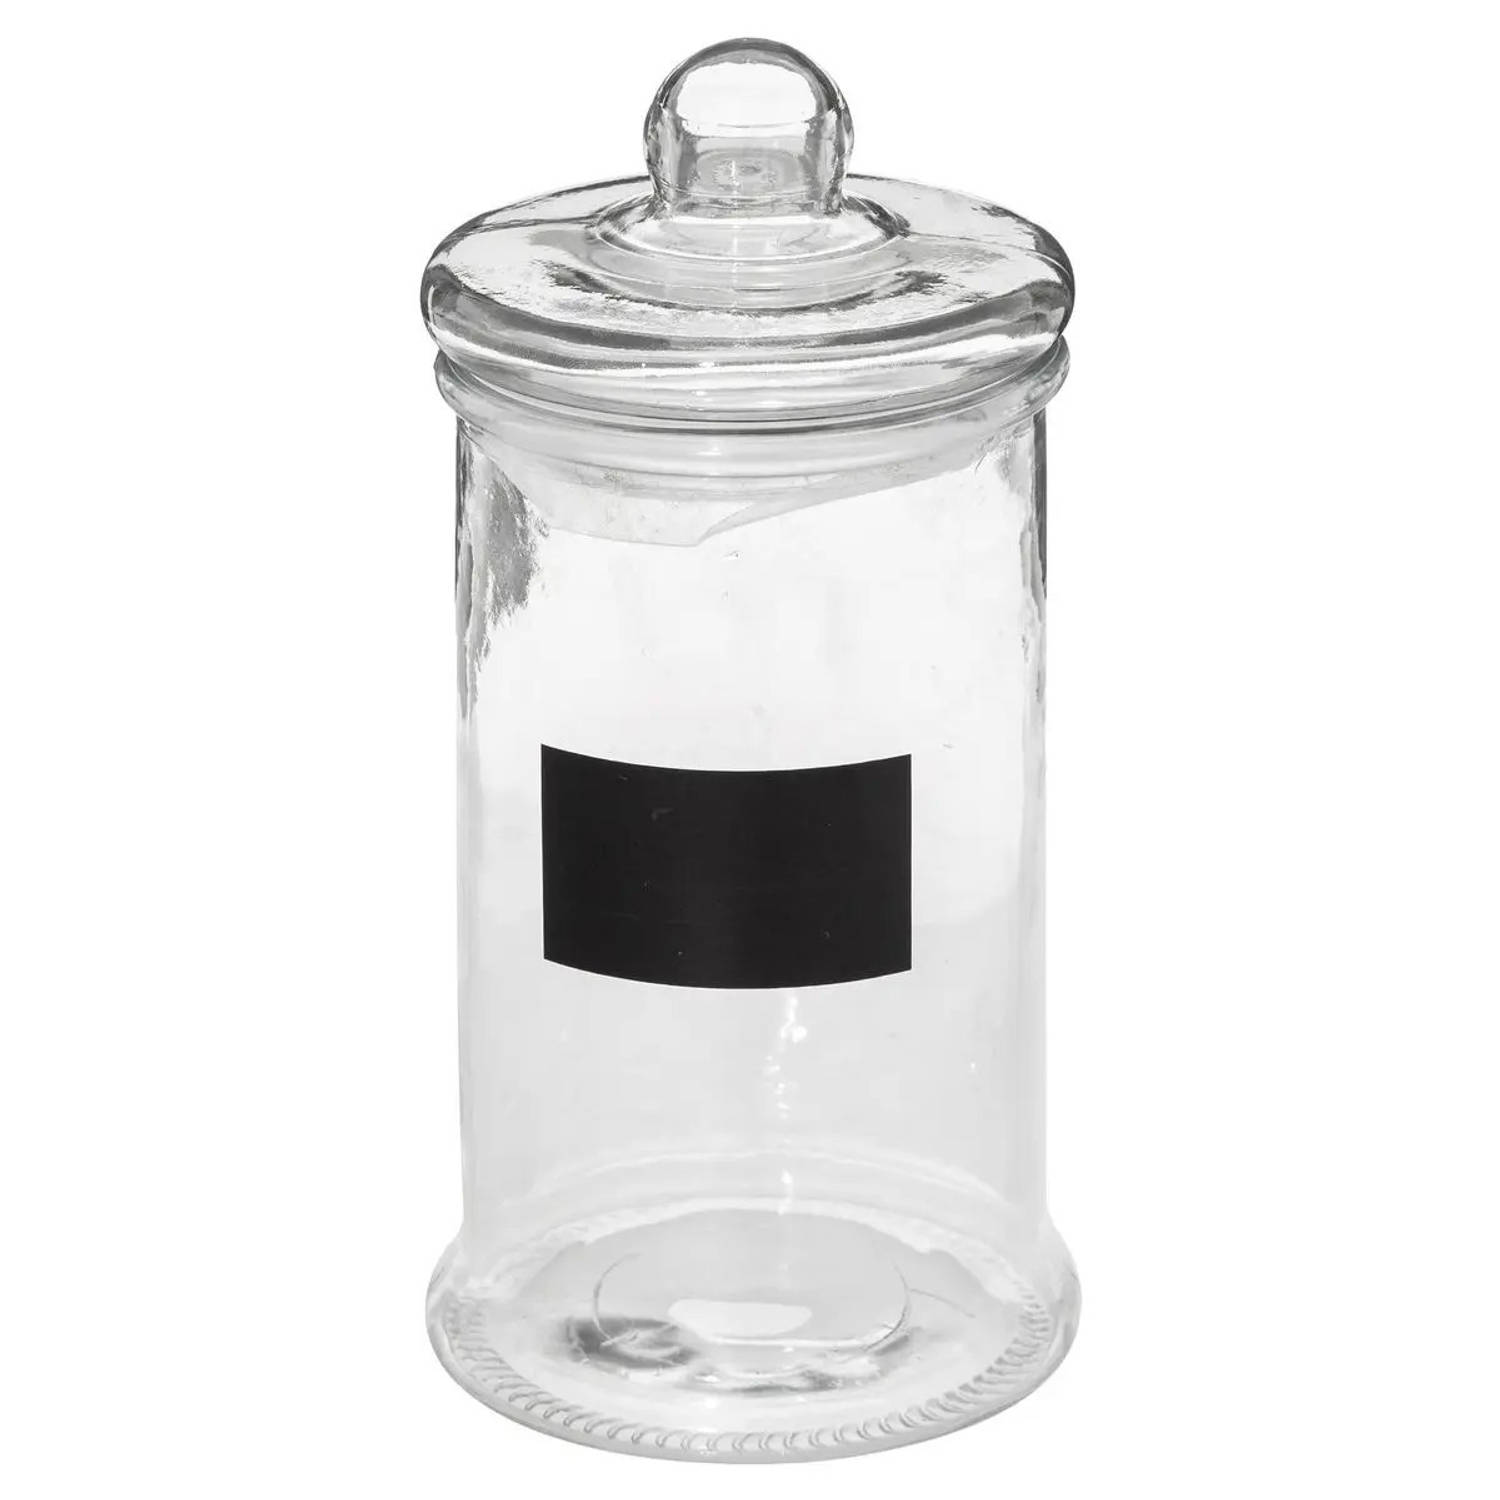 Snoeppot/voorraadpot 1,6L glas met deksel en krijtvlak - Voorraadpot